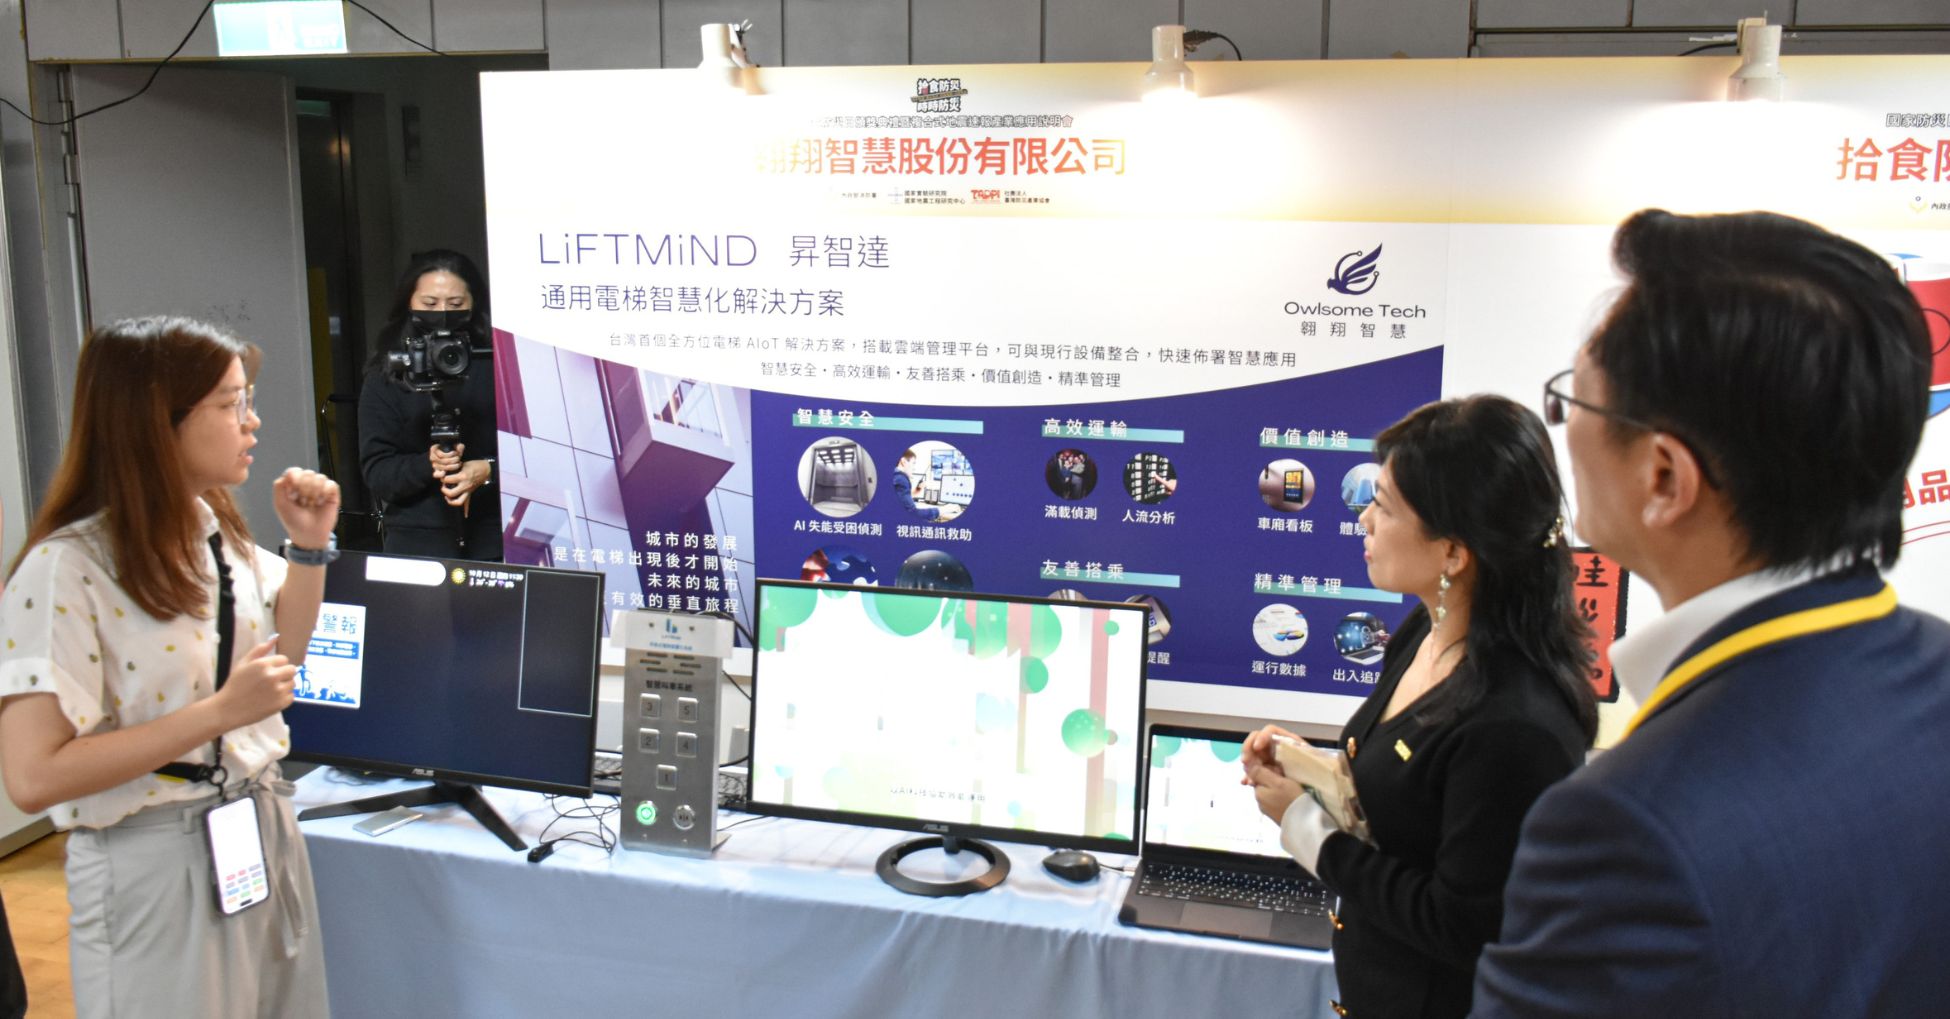 翱翔智慧展出LiftMind電梯智慧化系統助力地震防災